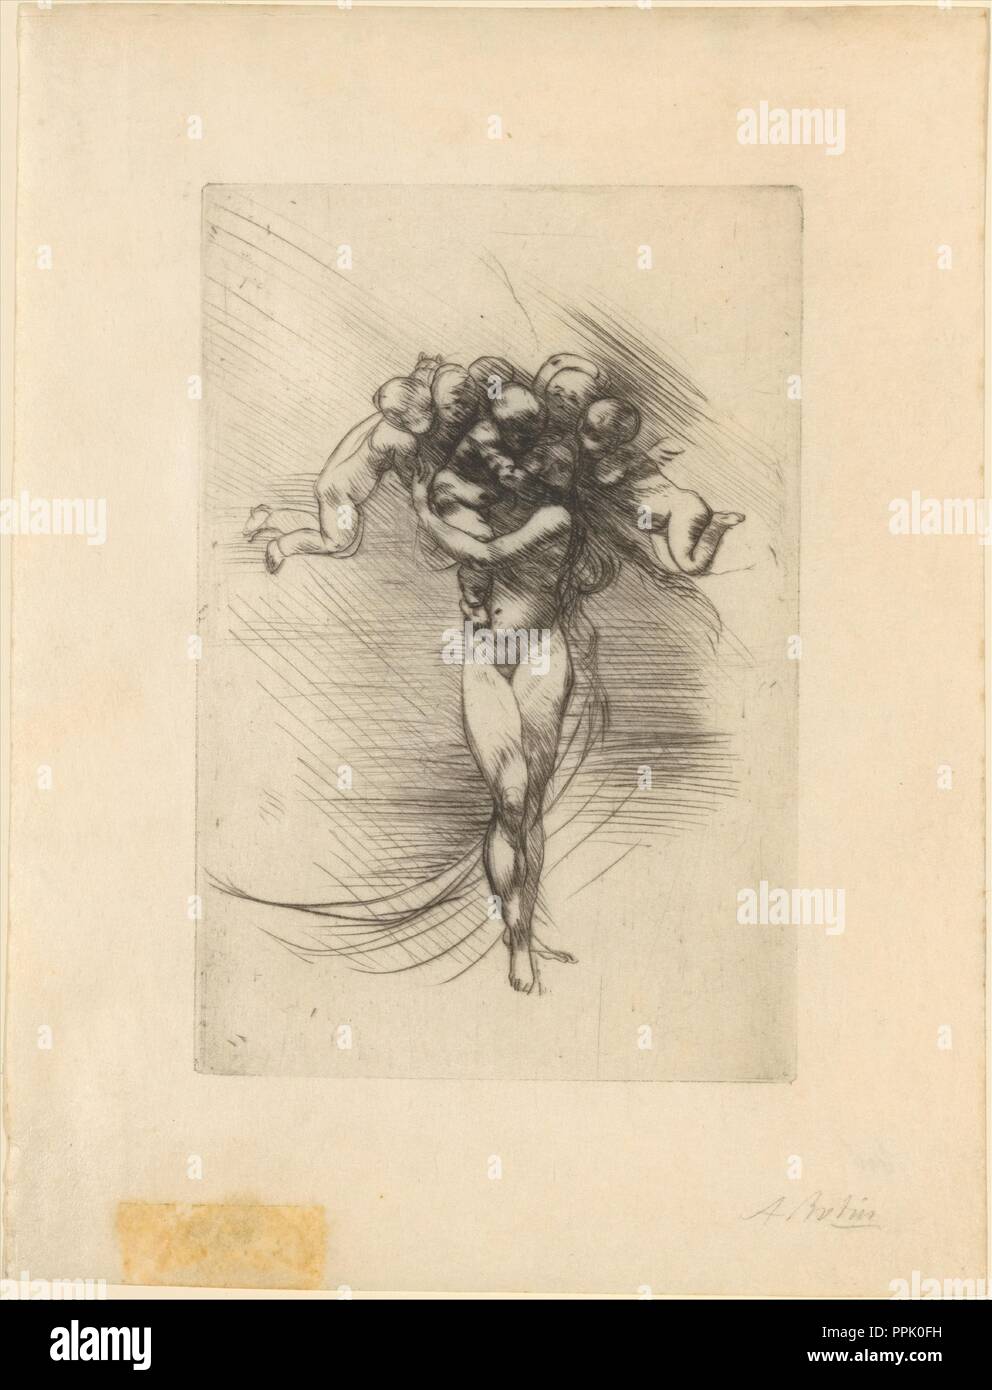 Spring (Le Printemps). Artiste : Auguste Rodin (français, Paris 1840-1917 Meudon). Fiche technique : Dimensions : 12 x 3/16 6 5/16 in. (31 x 16 cm) de droit : 5 13/16 x 3 15/16 in. (14,8 x 10 cm). Date : 1882-88. Rodin a appris la technique de la pointe sèche--une méthode de gravure qui consiste à dessiner avec une aiguille directement sur une plaque de métal--de l'artiste Alphonse Legros lors d'une visite à Londres en 1881. Le motif d'une figure féminine dont la tête est entourée de putti est apparue sur un vase Rodin conçu pour la manufacture de porcelaine de Sèvres, où il a travaillé de 1879 à 1885, bien que la composition ici est la plus semblable à Banque D'Images